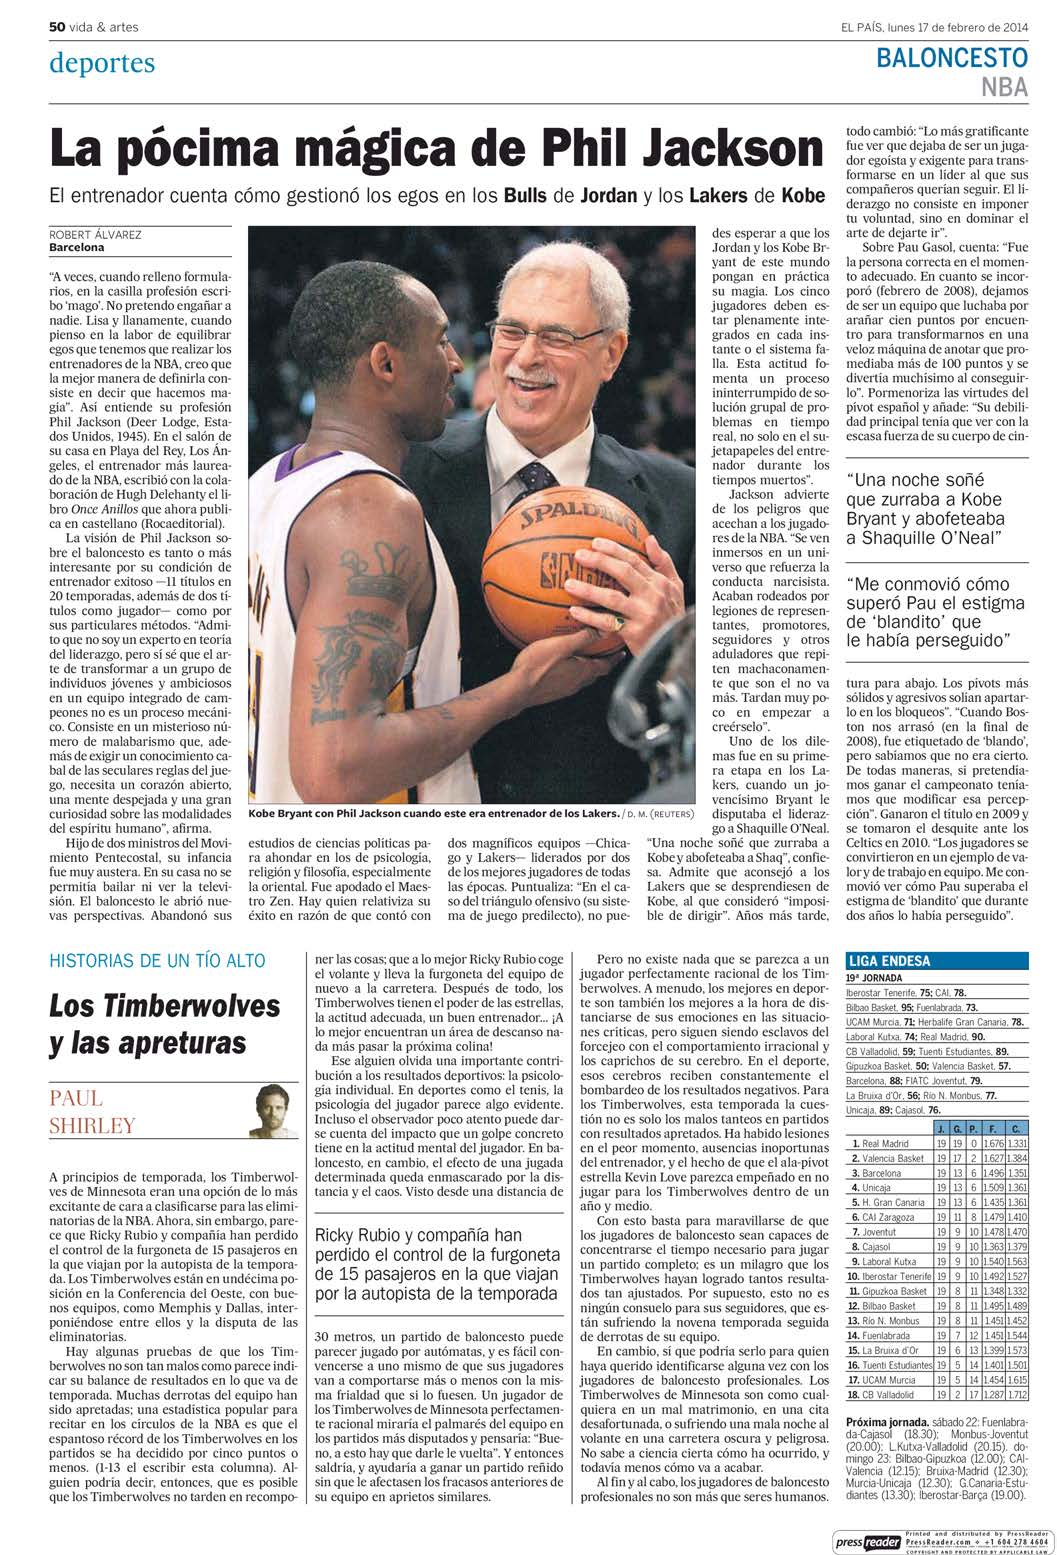 17/2/2014 Kiosko y Más - El País - 17 feb. 2014 - Page #50 http://lector.kioskoymas.